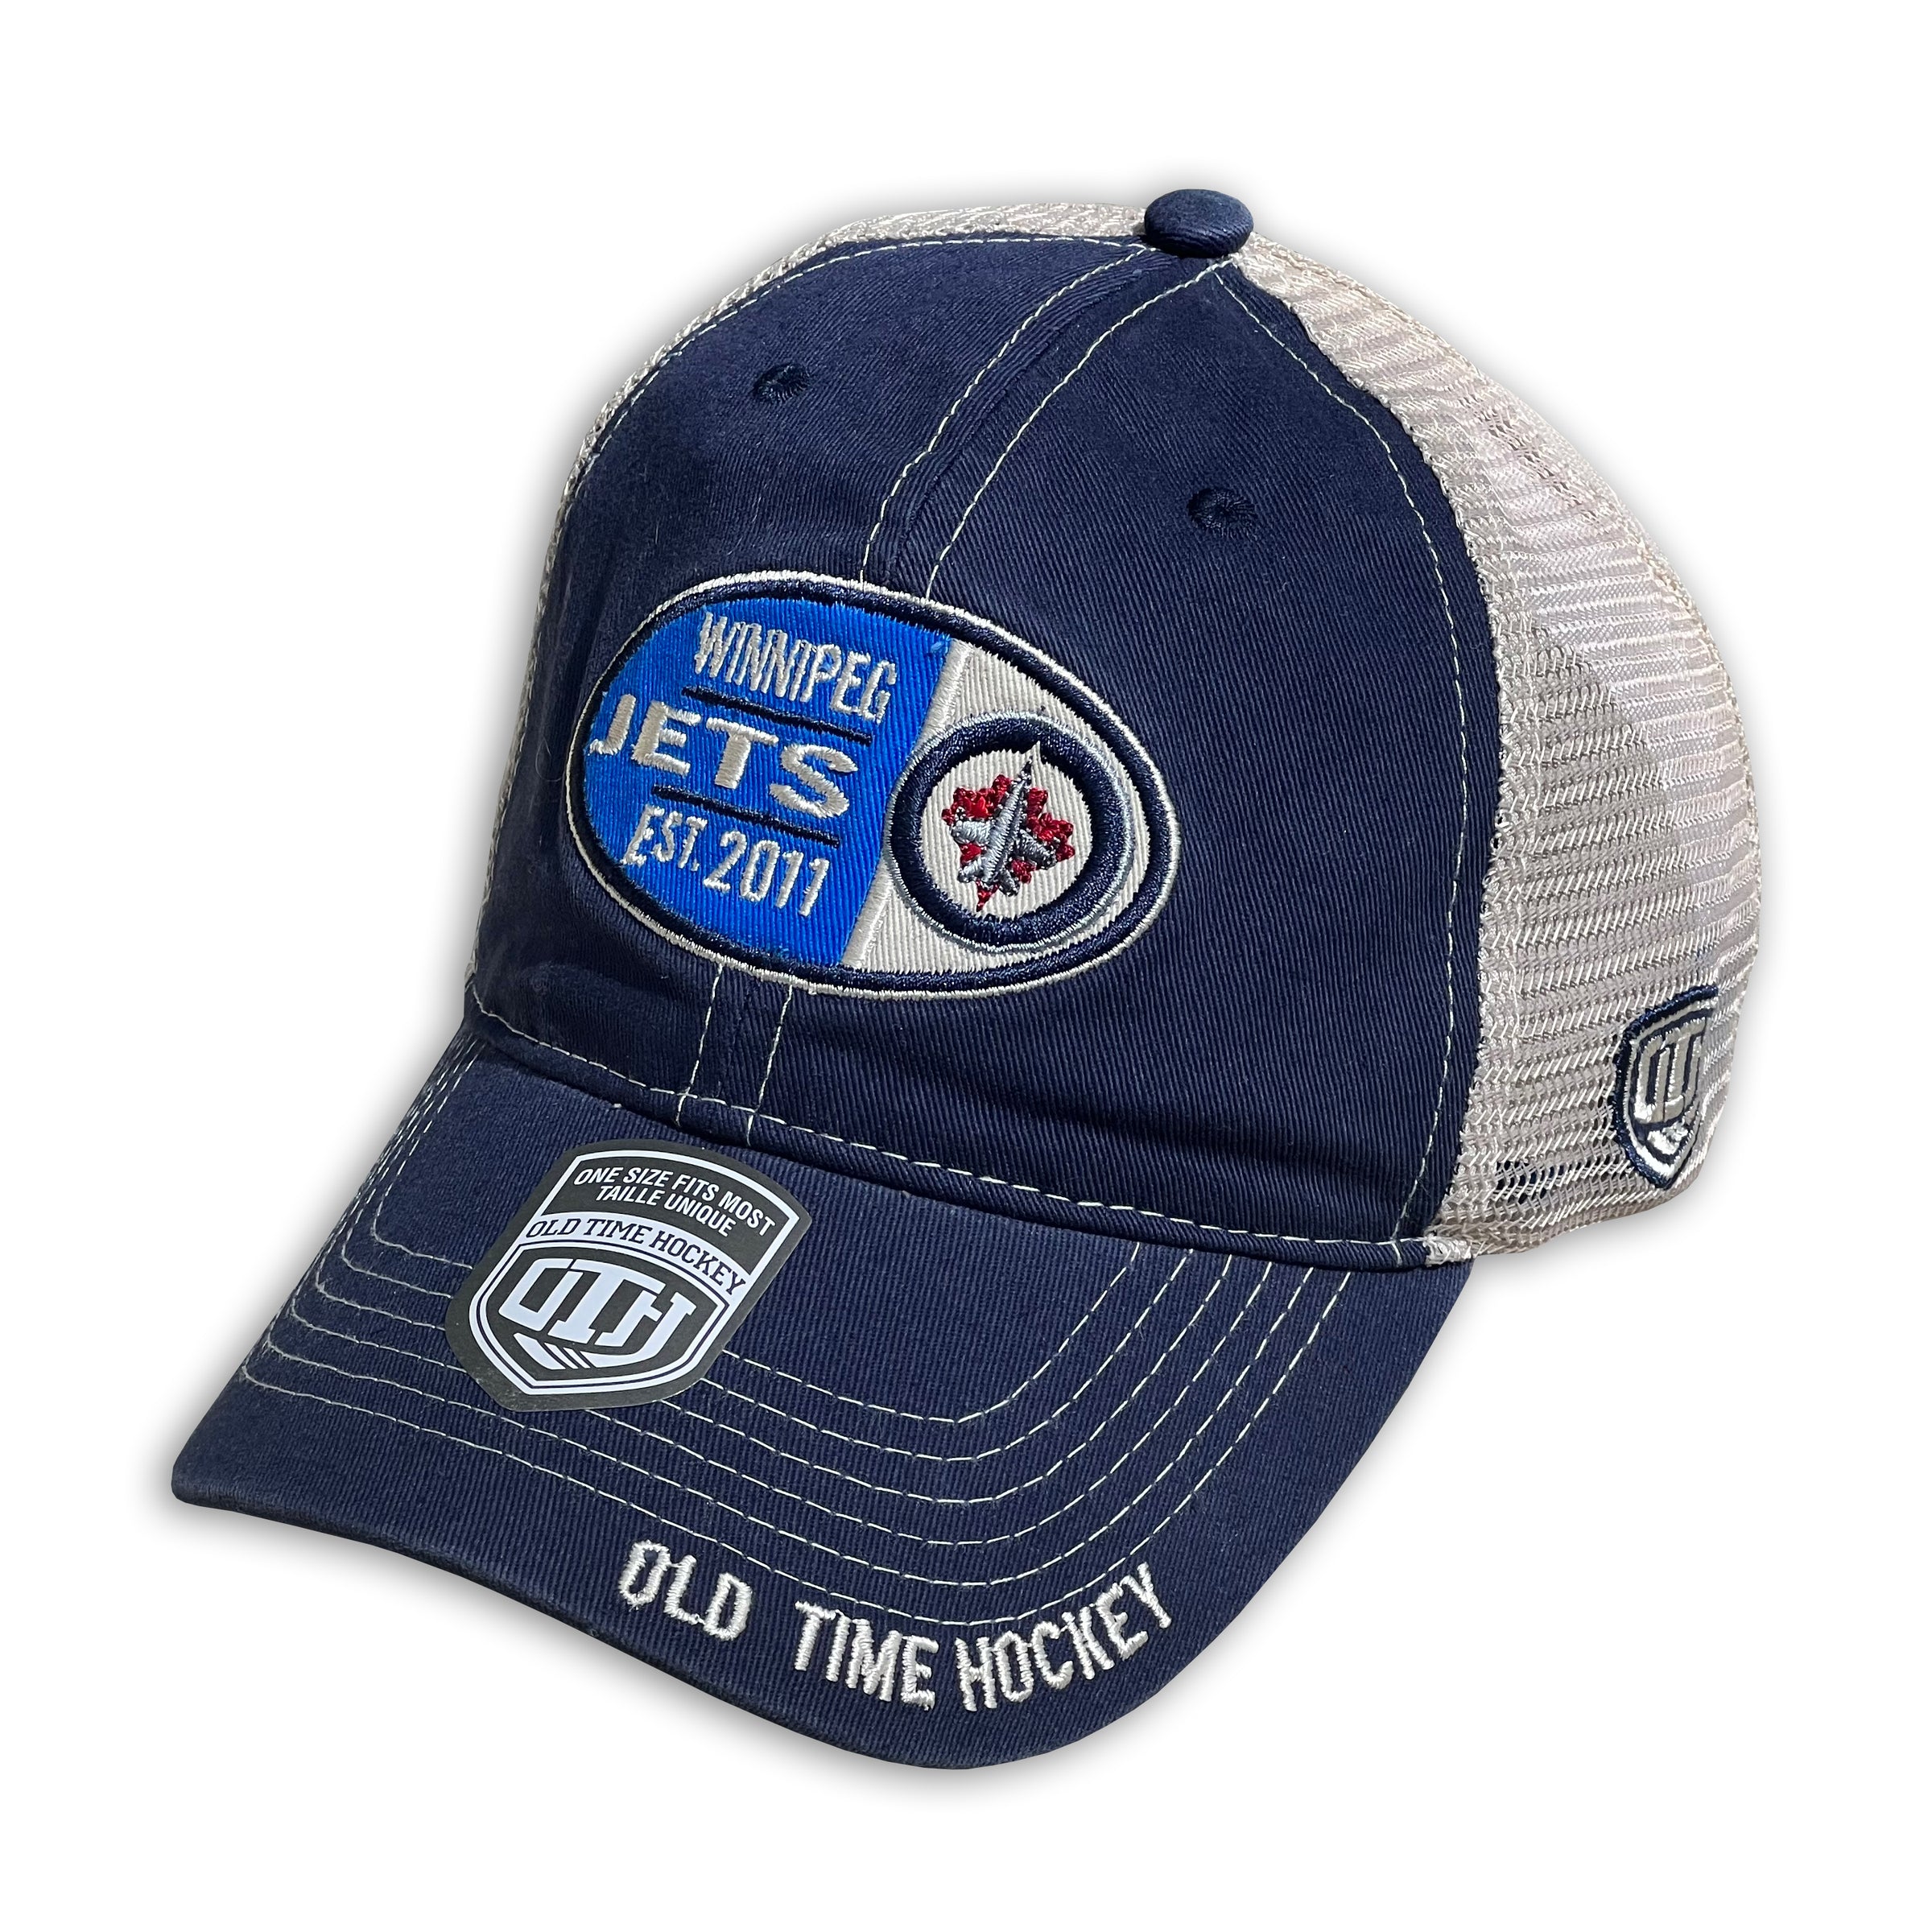 Winnipeg Jets NHL trucker cap